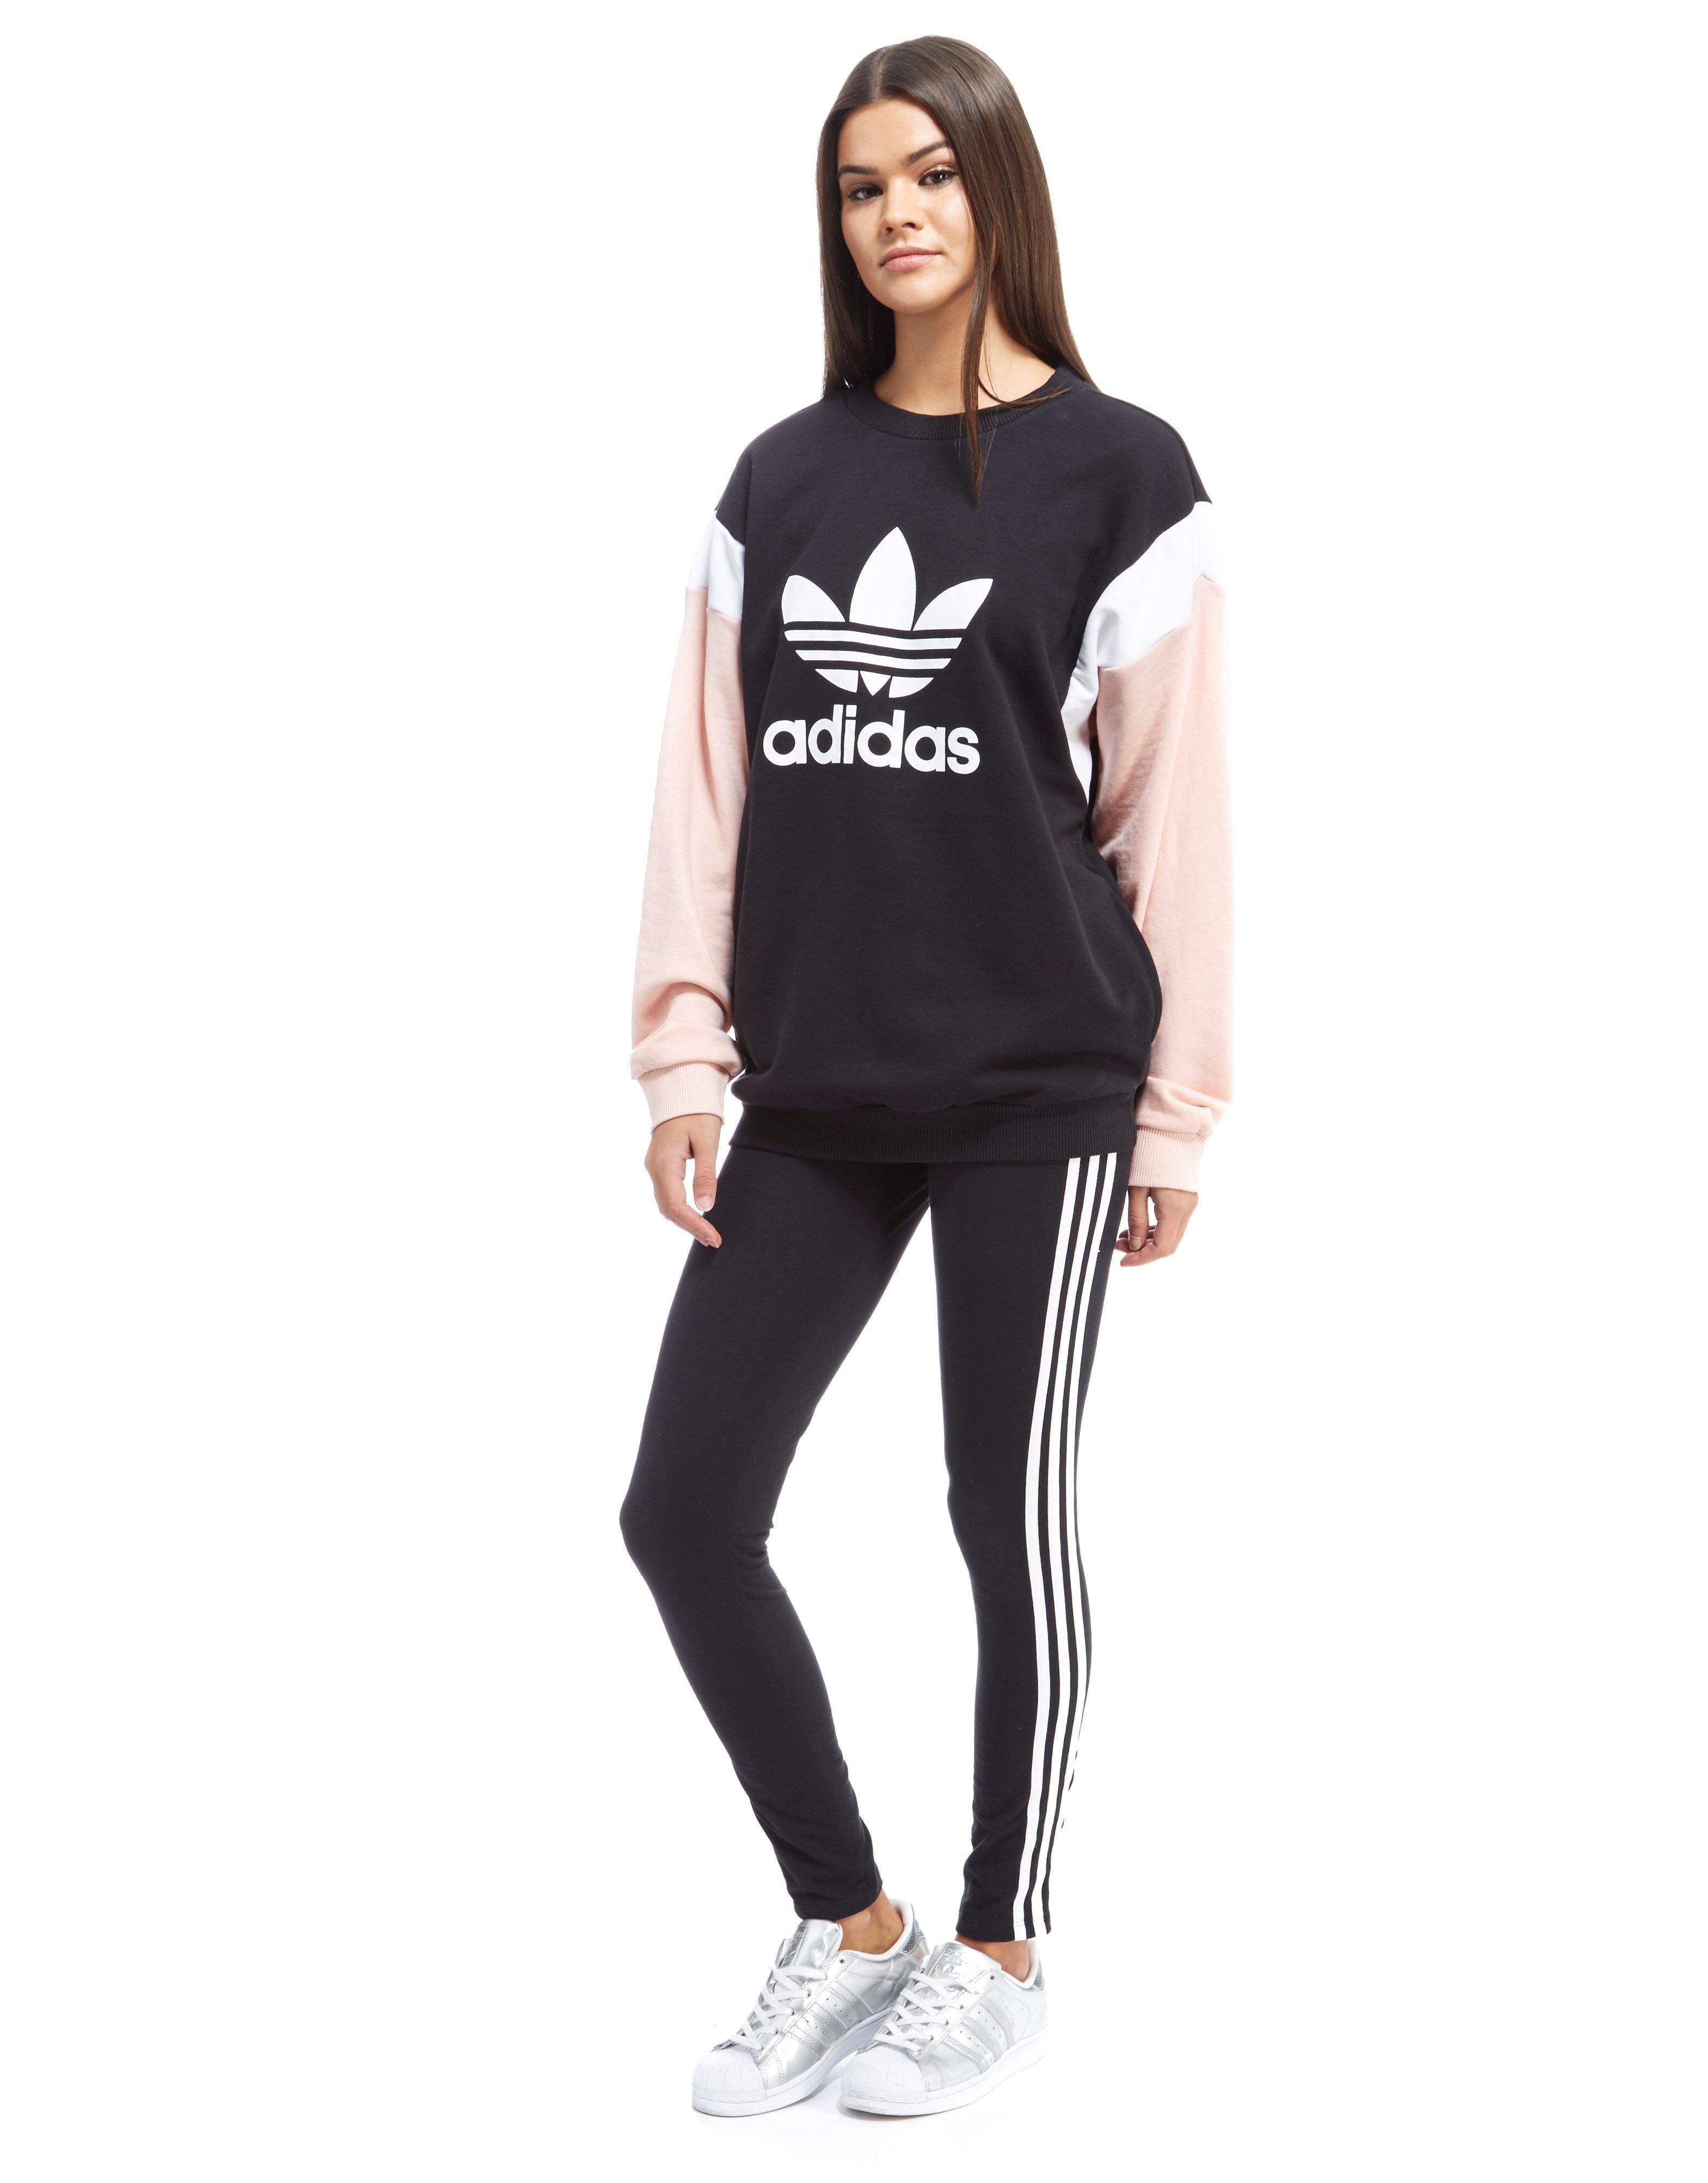 Adidas Originals Colour Block Sweatshirt on Sale, GET 55% OFF,  ricettecuco.it